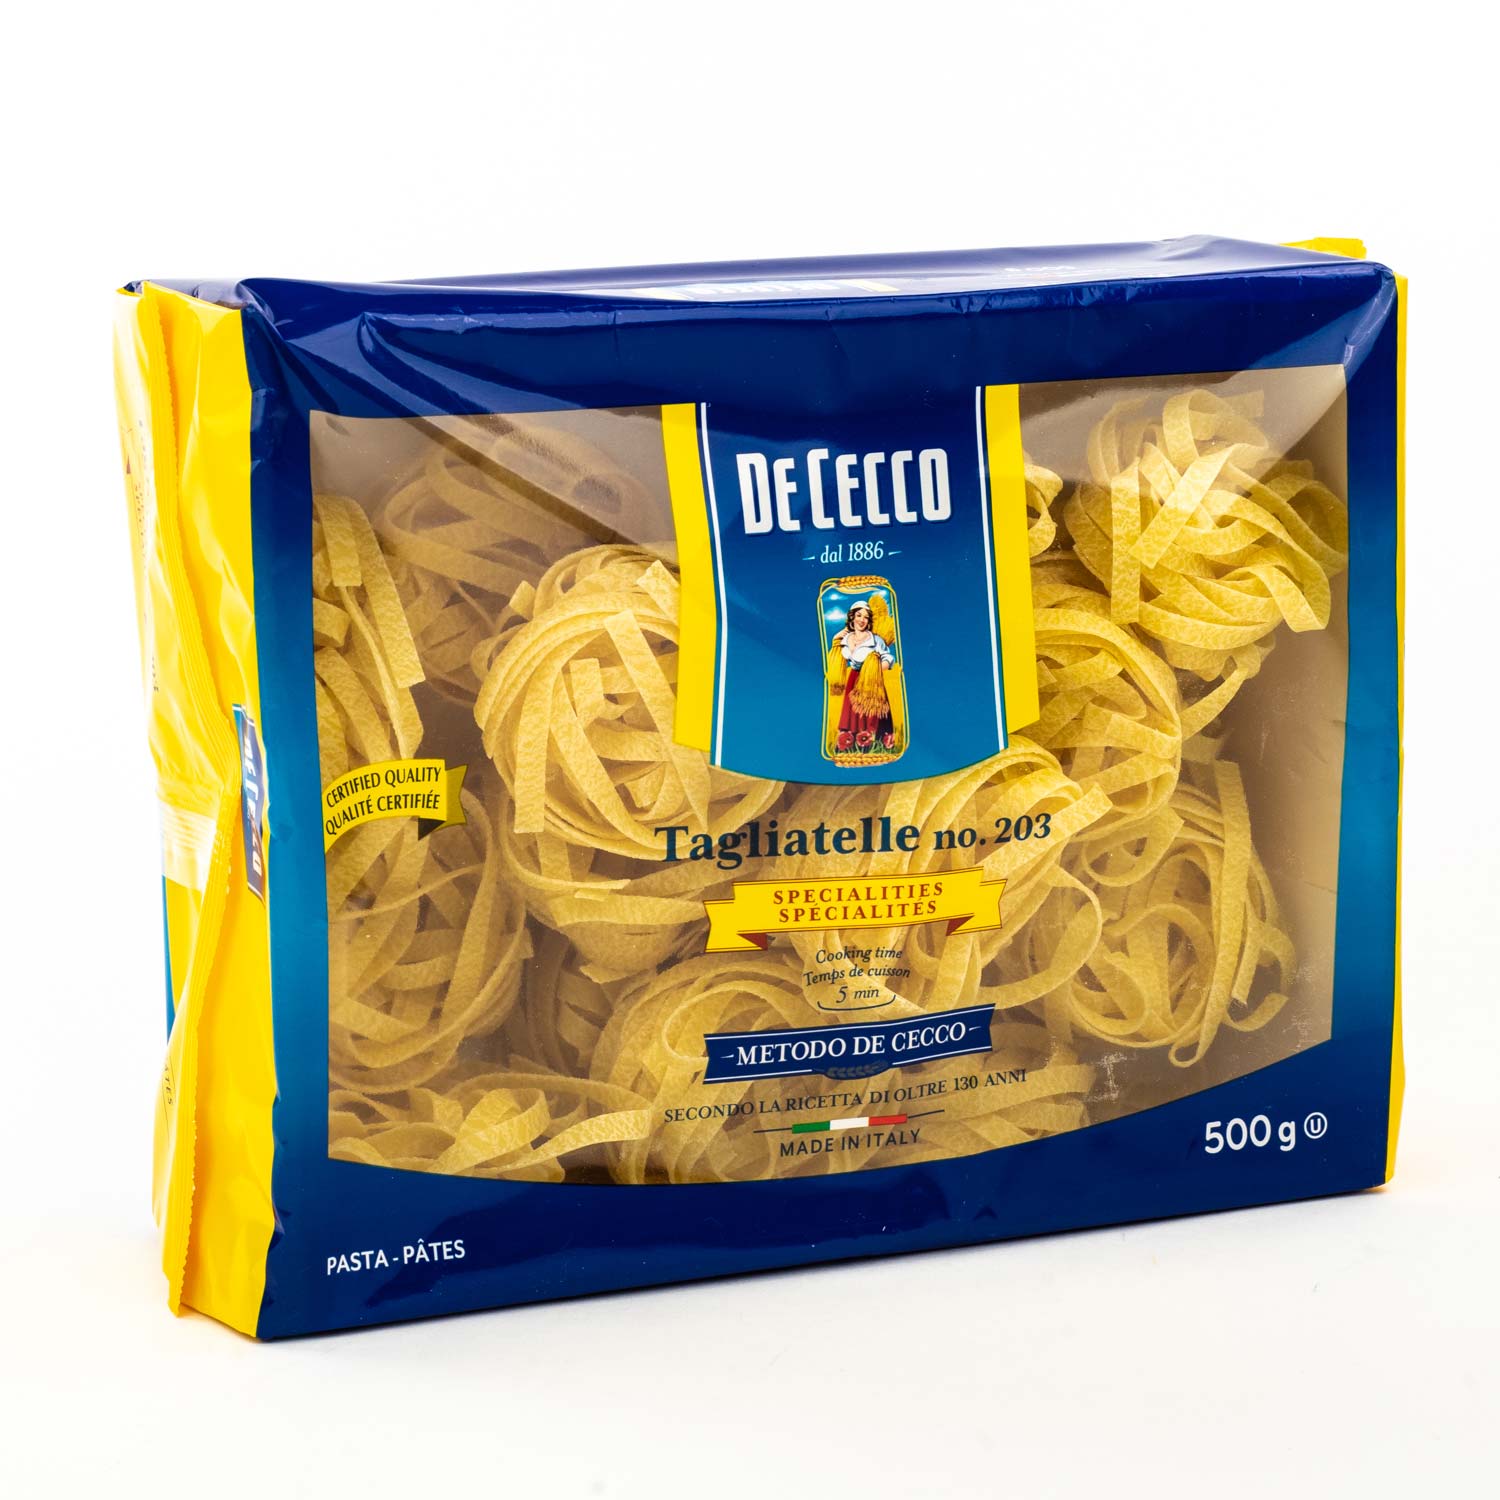 De Cecco N°12 Spaghetti 500 g : : Epicerie